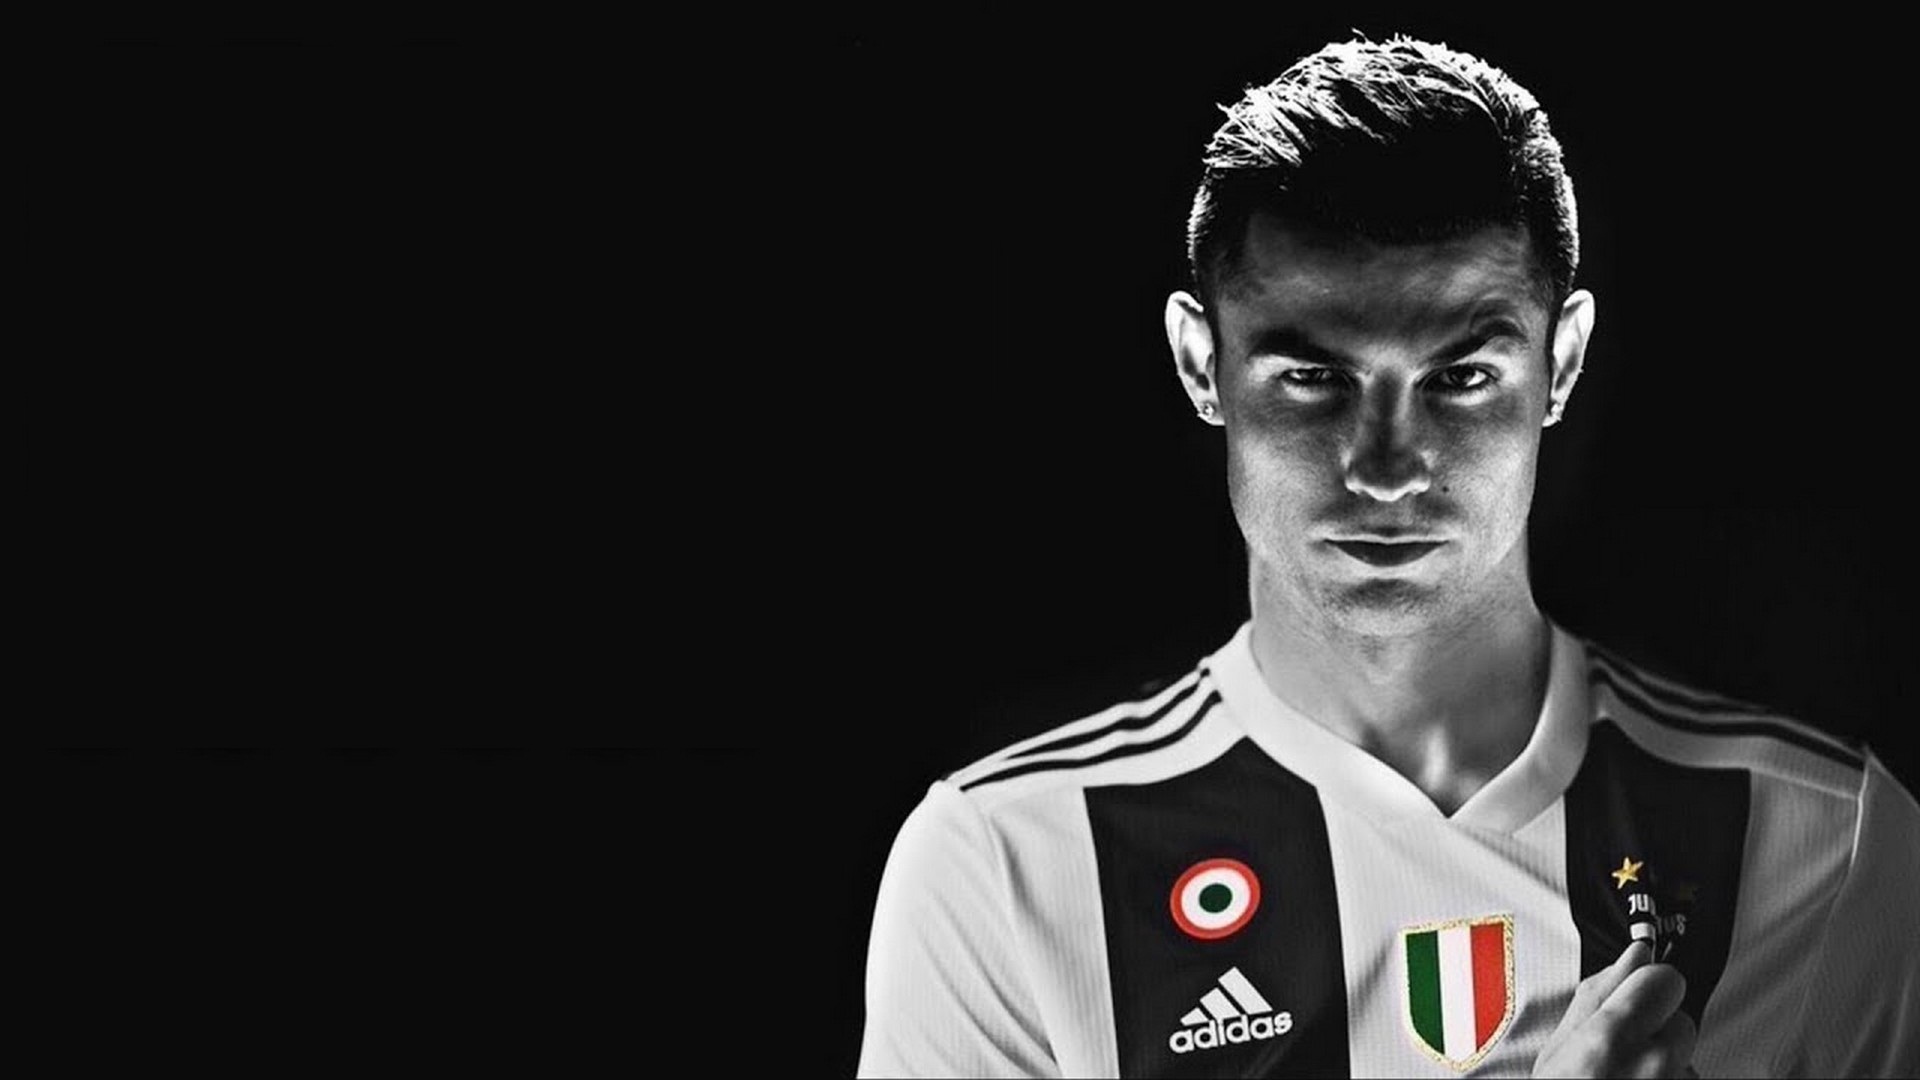 CHÍNH THỨC Juventus hân hoan công bố siêu bom tấn Cristiano Ronaldo   VTVVN